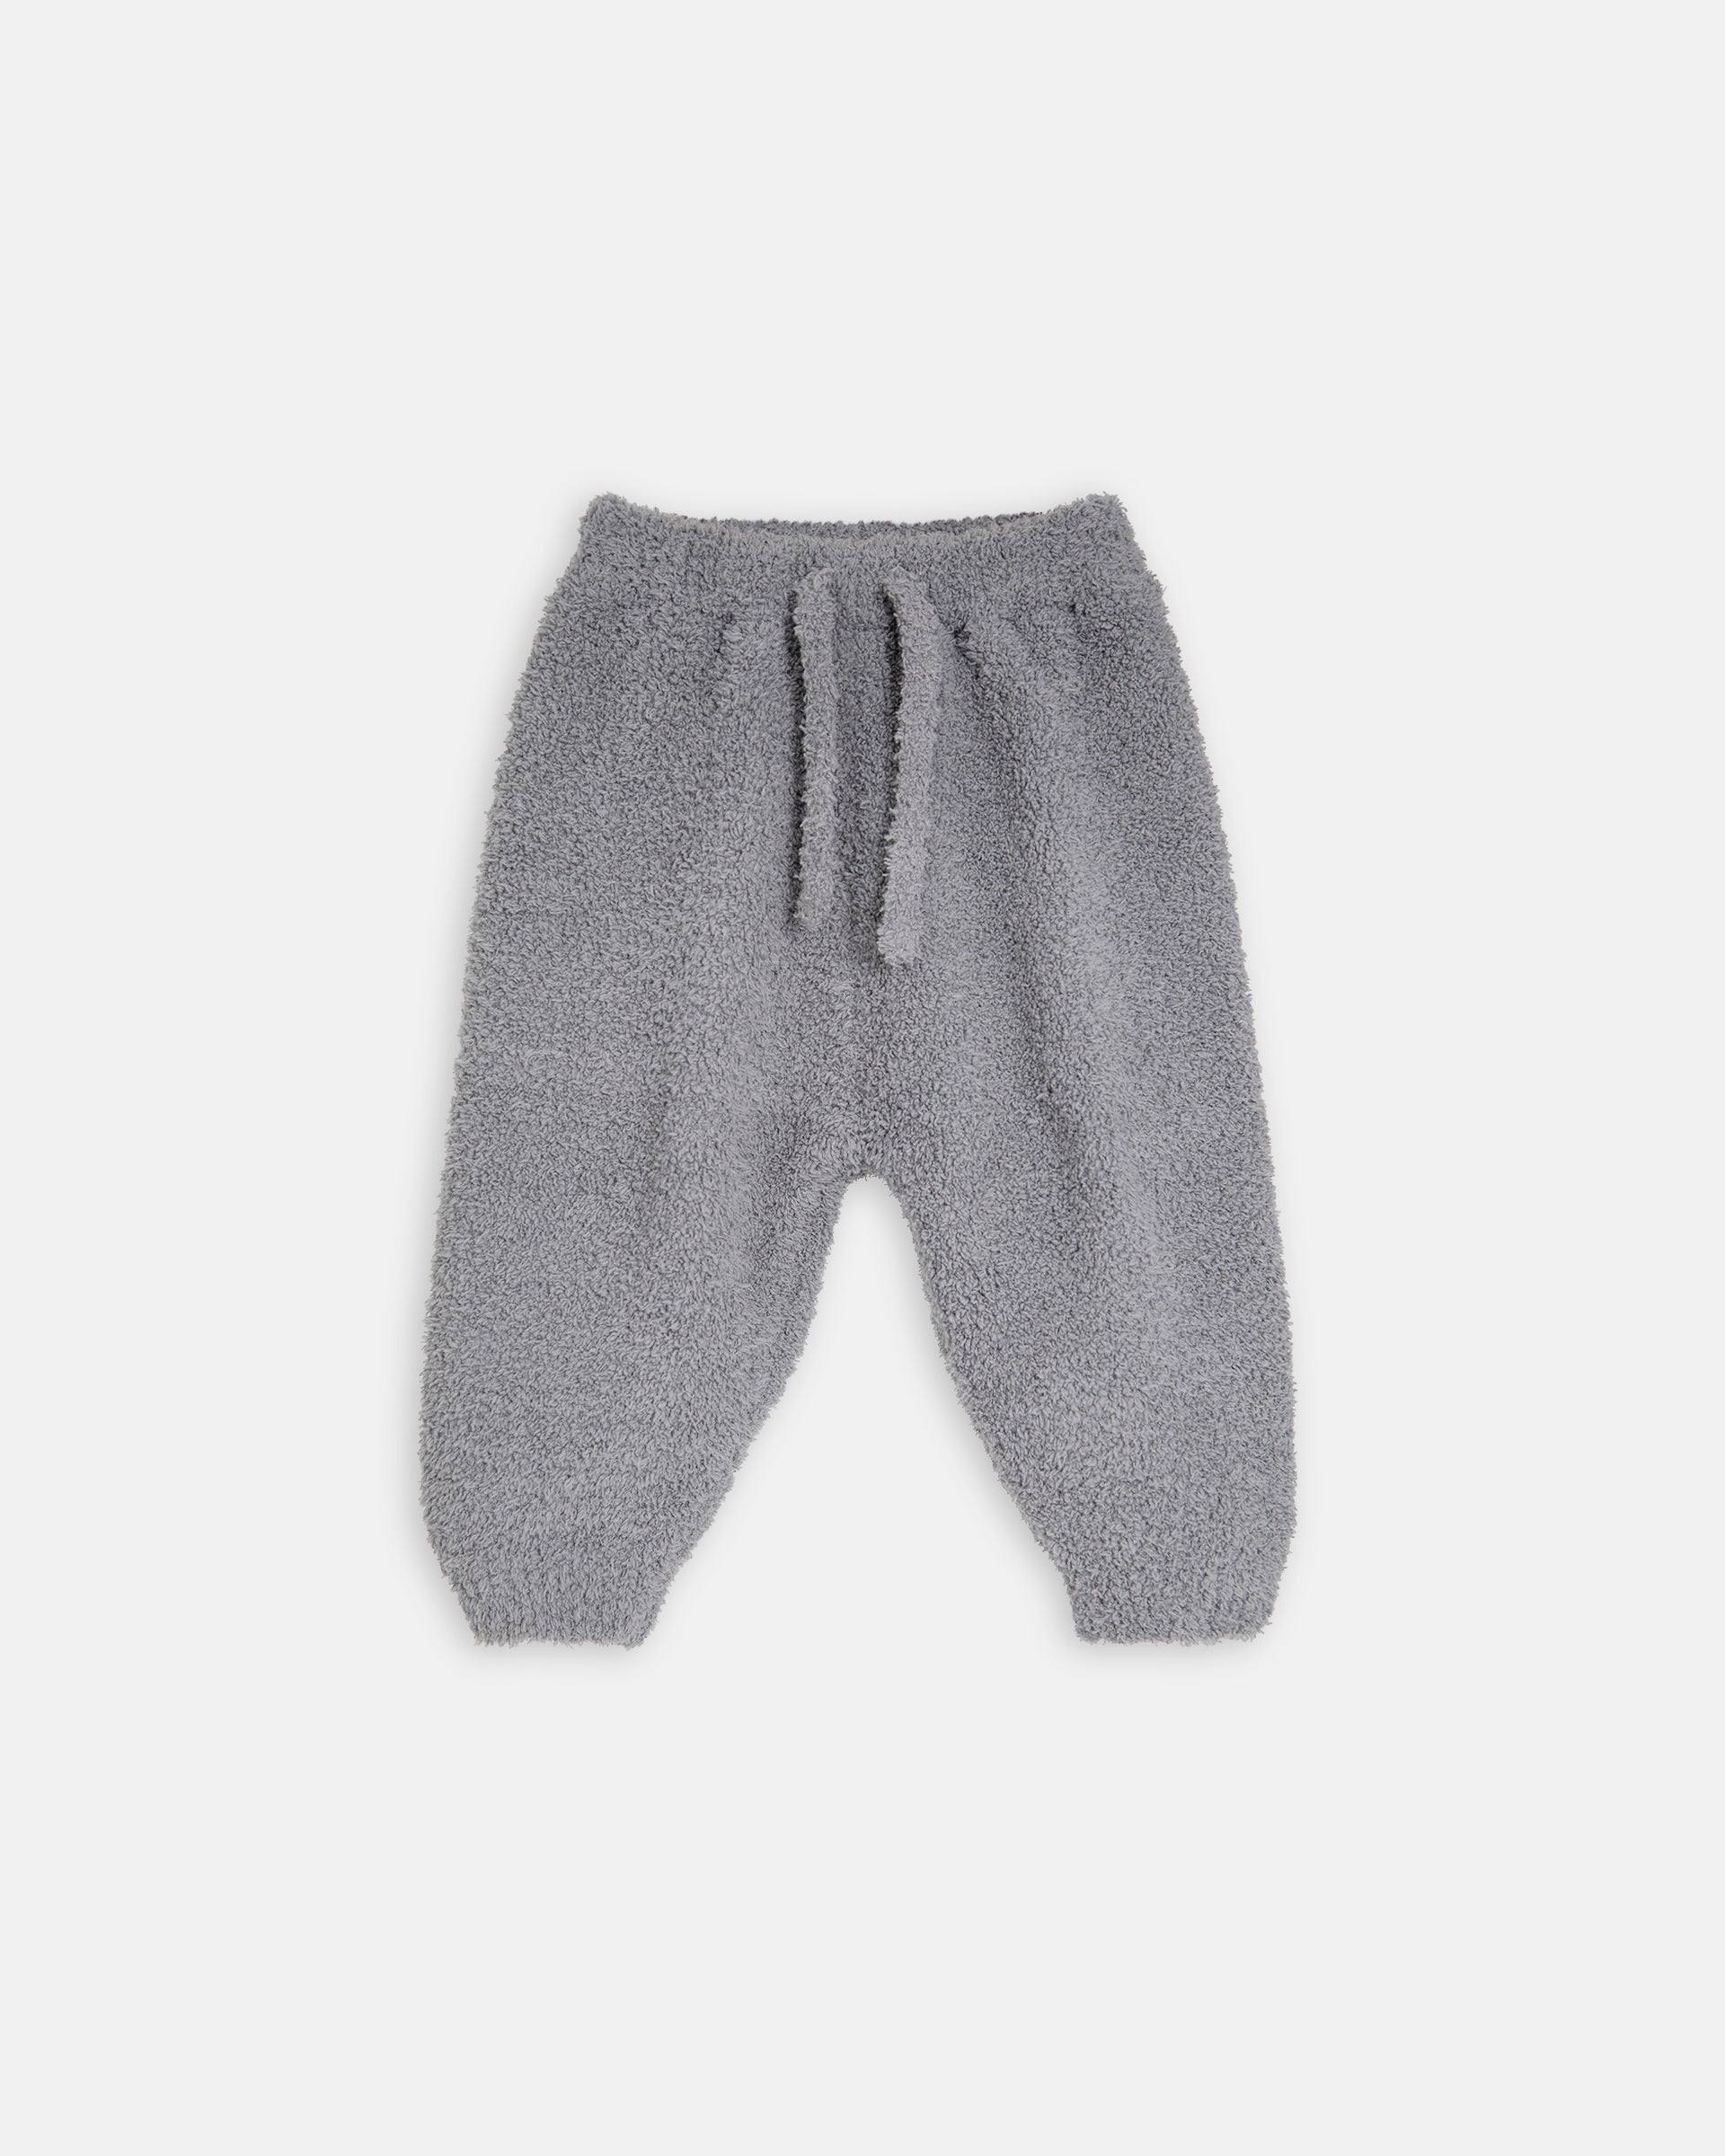 7 A.M. Enfant Fuzzy Lounge Pants - Gris - Twinkle Twinkle Little One